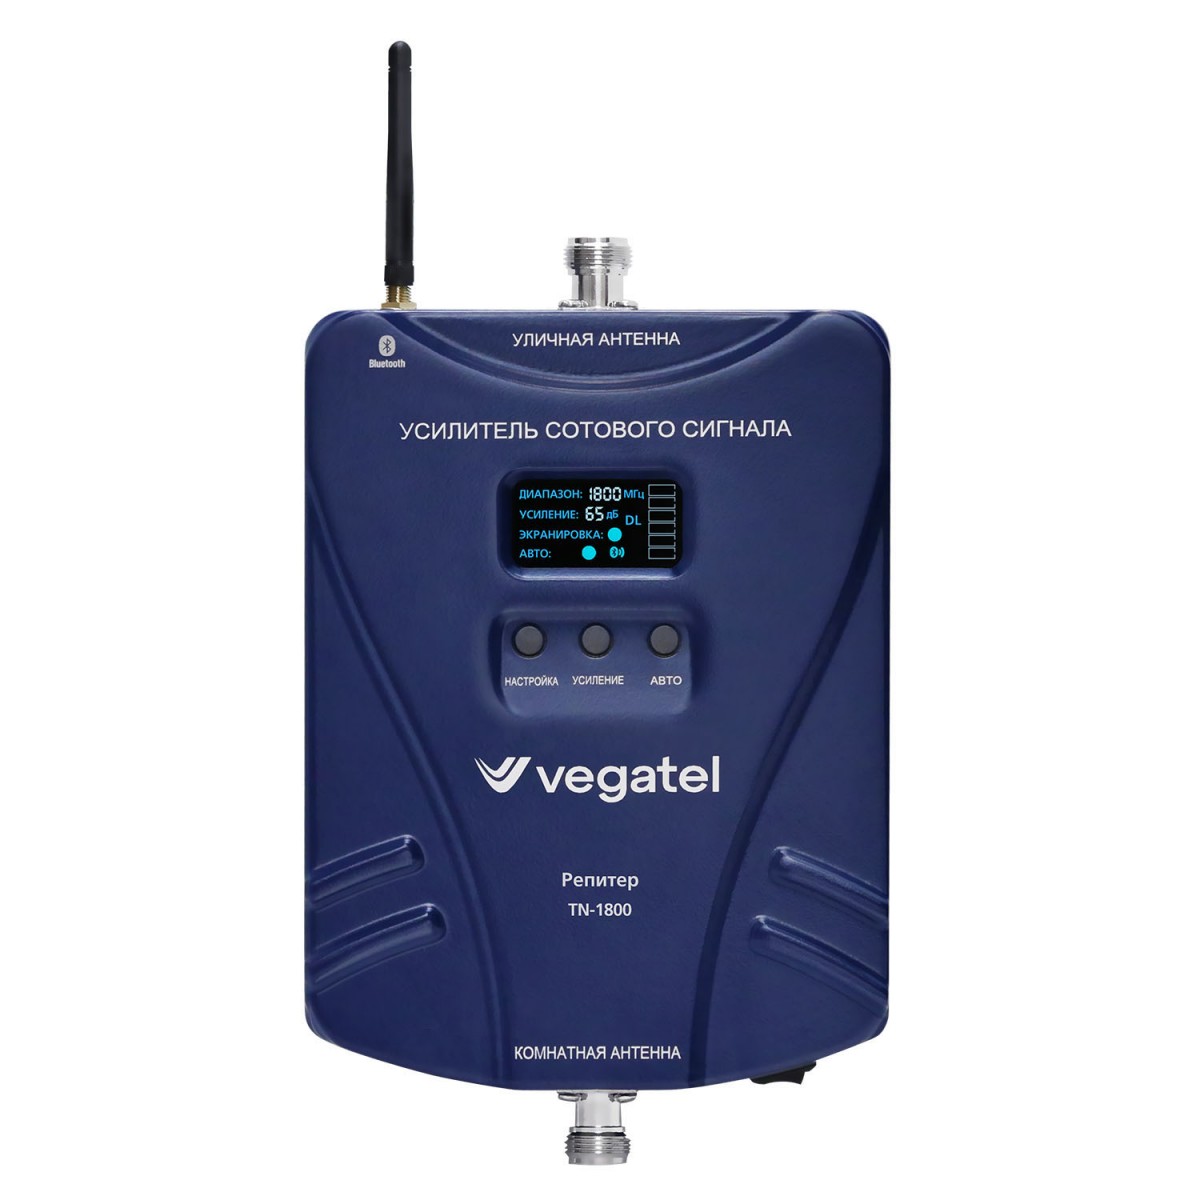 Детальное изображение товара "Комплект усиления сотовой связи Vegatel TN-1800" из каталога оборудования Антенна76